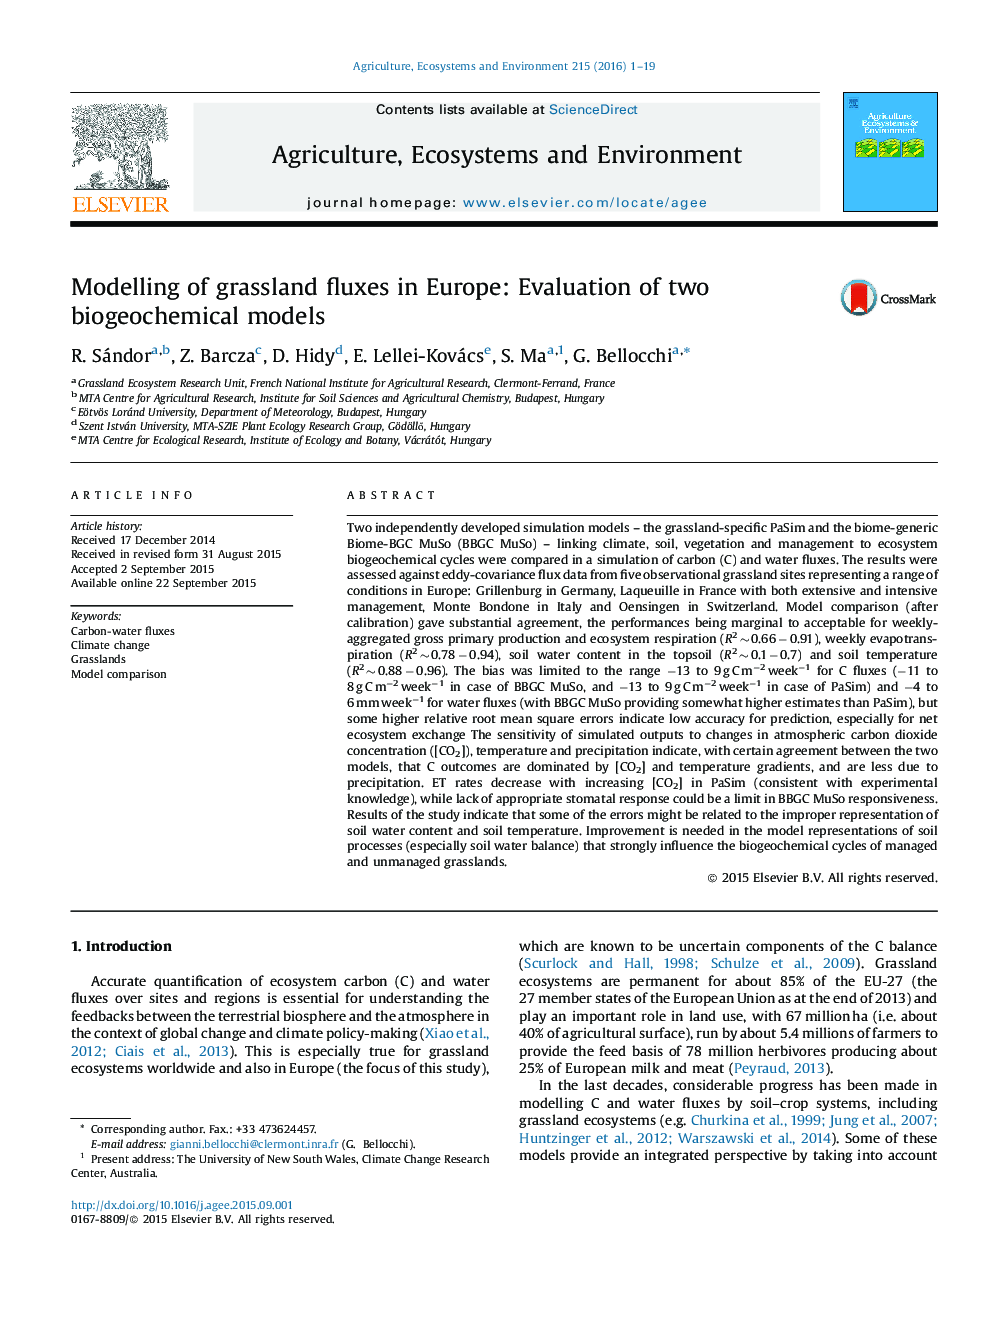 مدل سازی فواره های گندم در اروپا: ارزیابی دو مدل بیوگرافی شیمیایی 